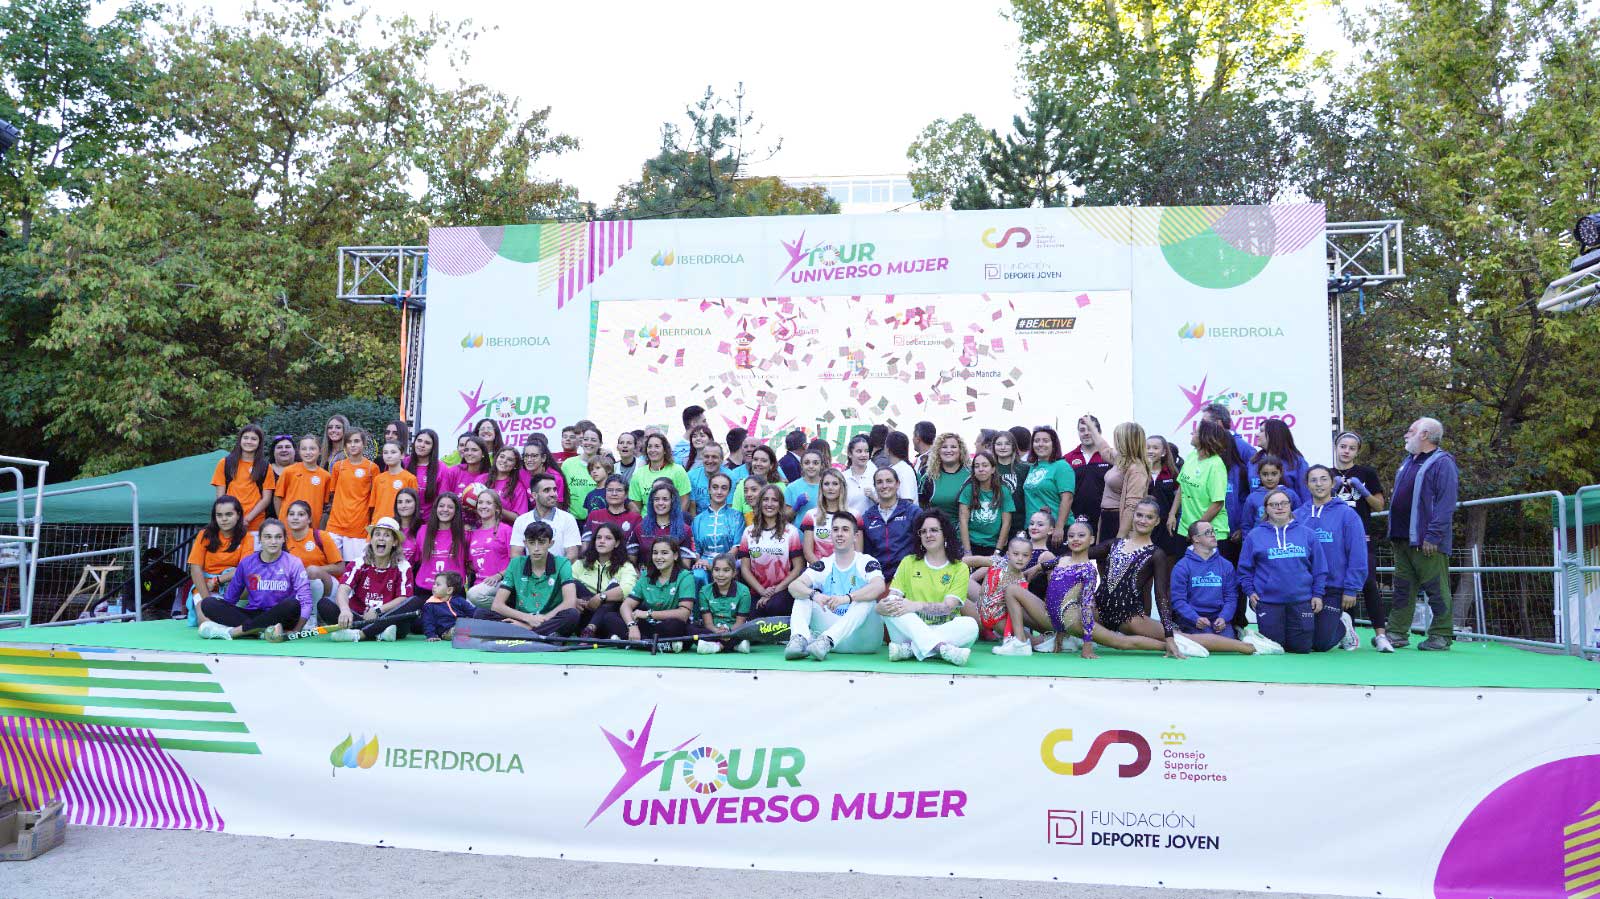 El parque de San Julián se viste de deporte, inclusión y diversión en el arranque del Tour Universo Mujer